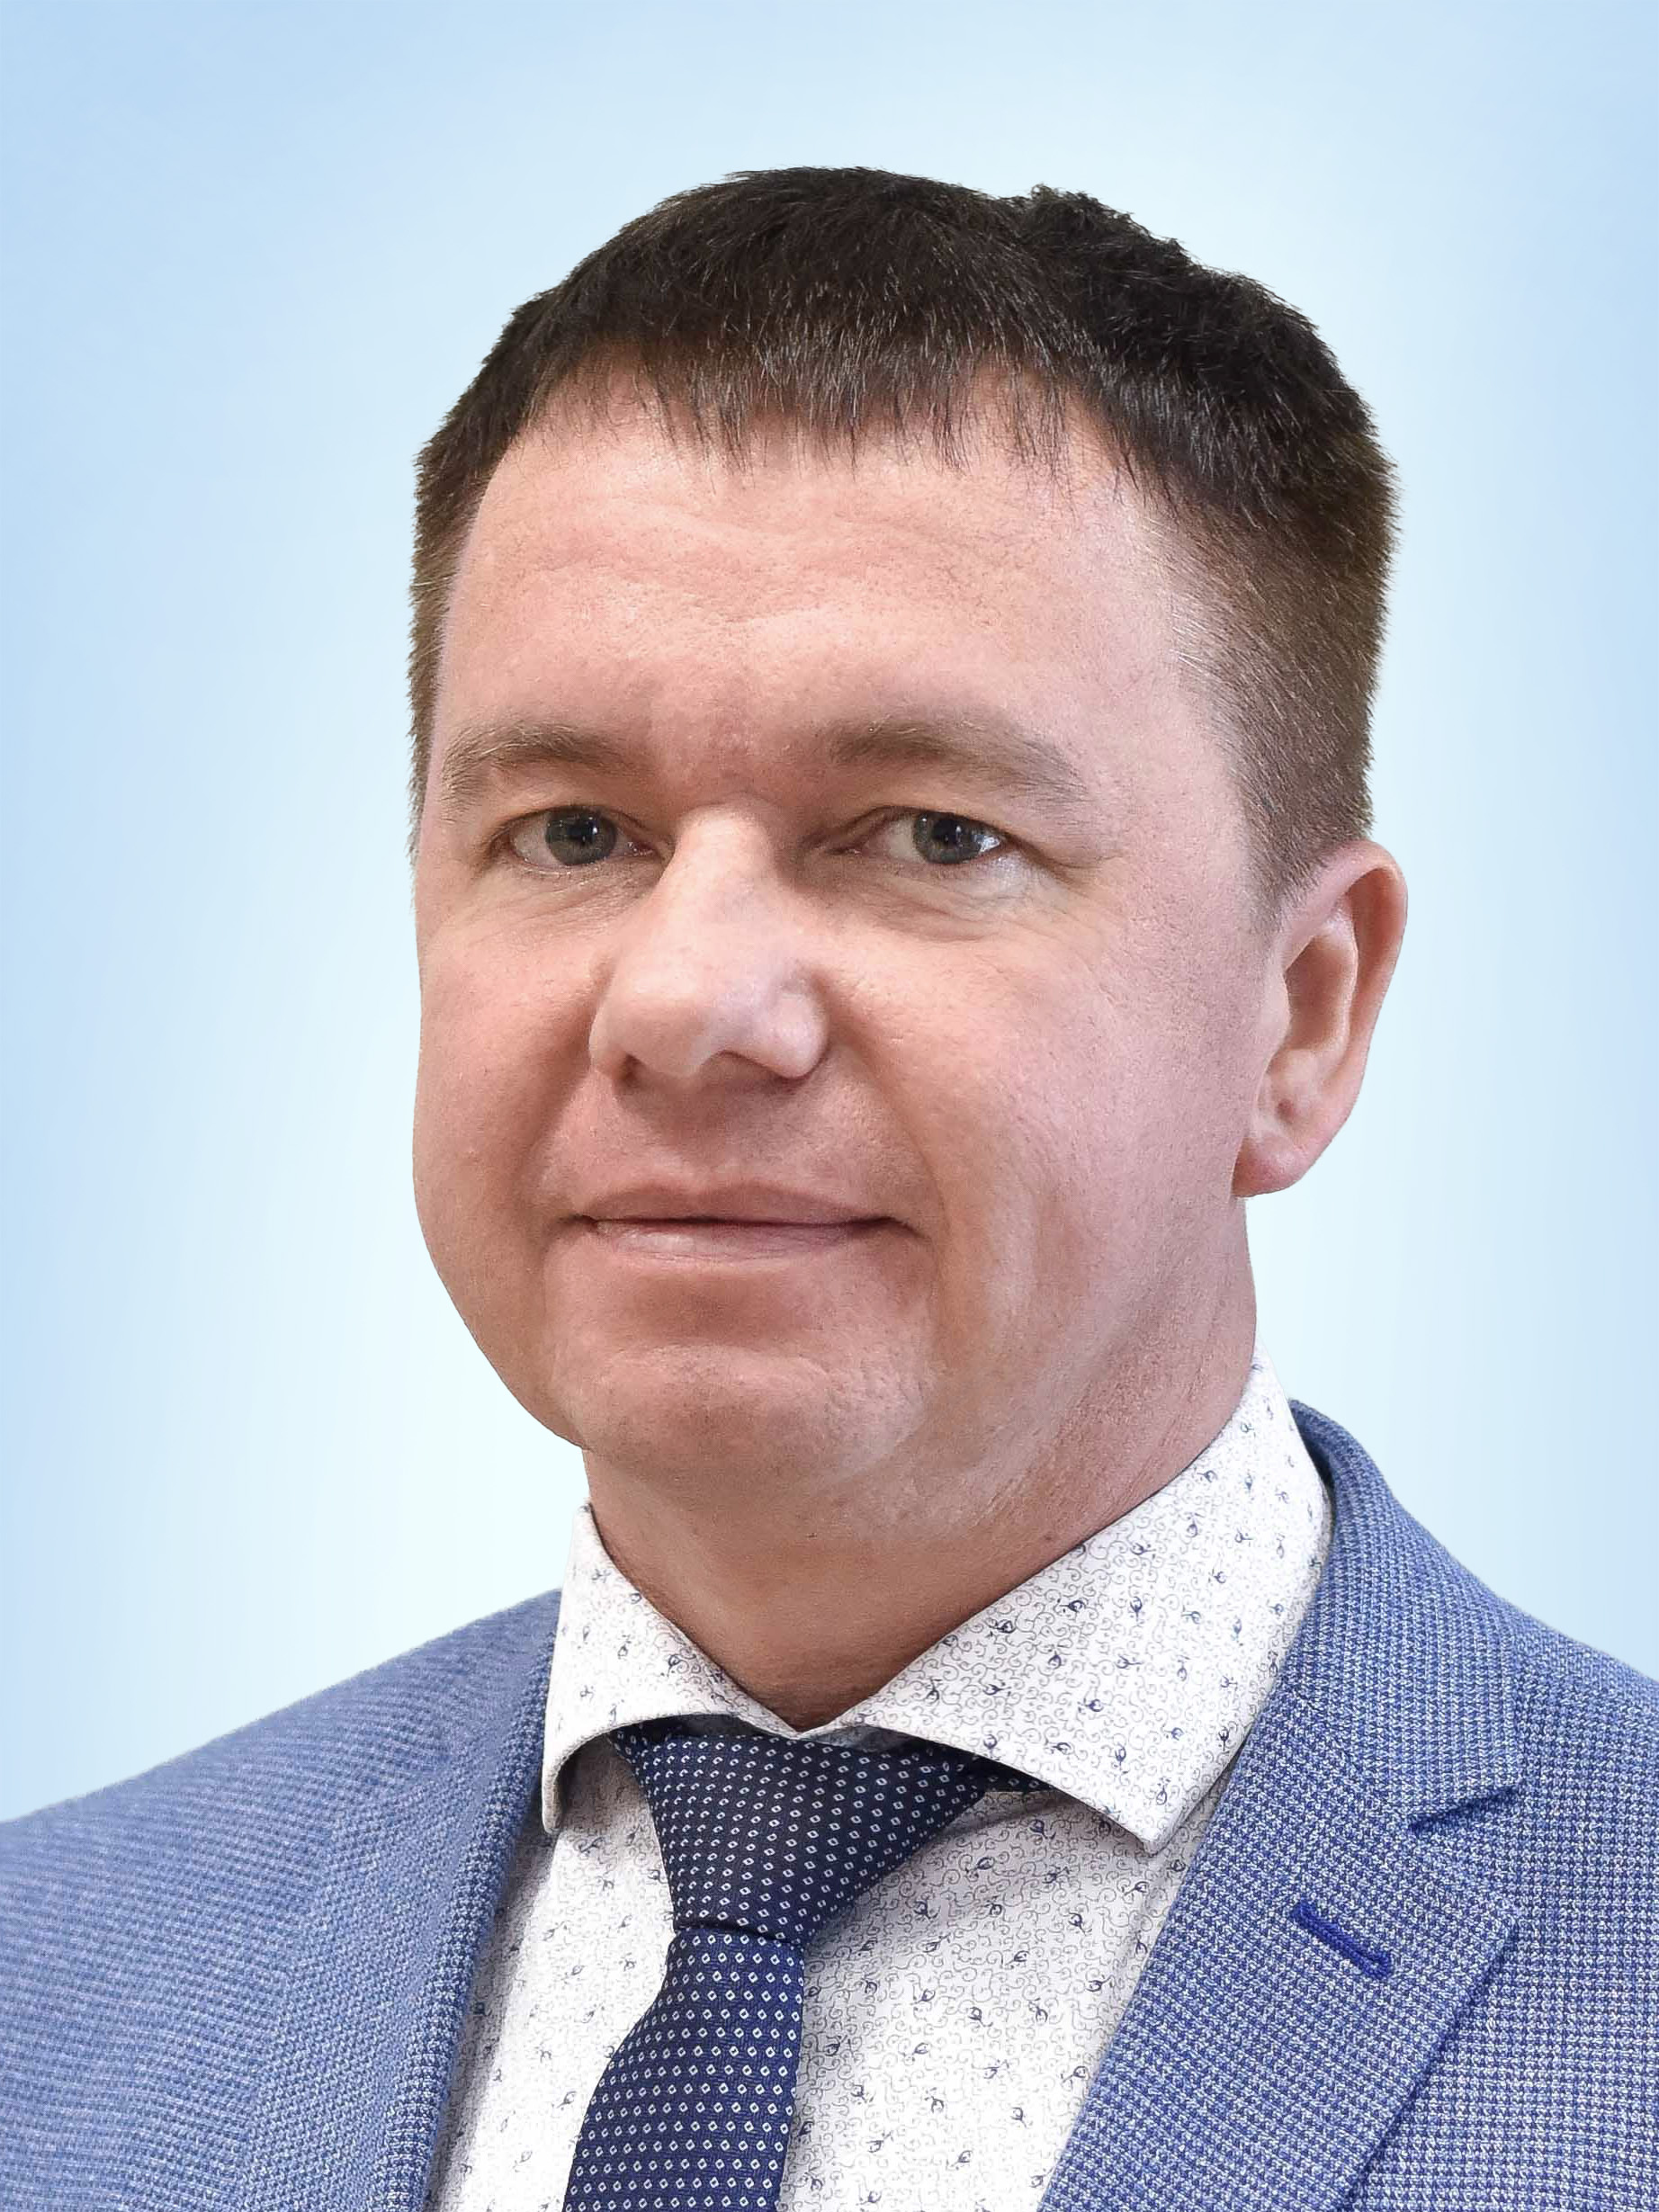 <strong>Сабирджанов<br /> Фарид Рустамович</strong><br />
Заместитель генерального директора по реализации газа